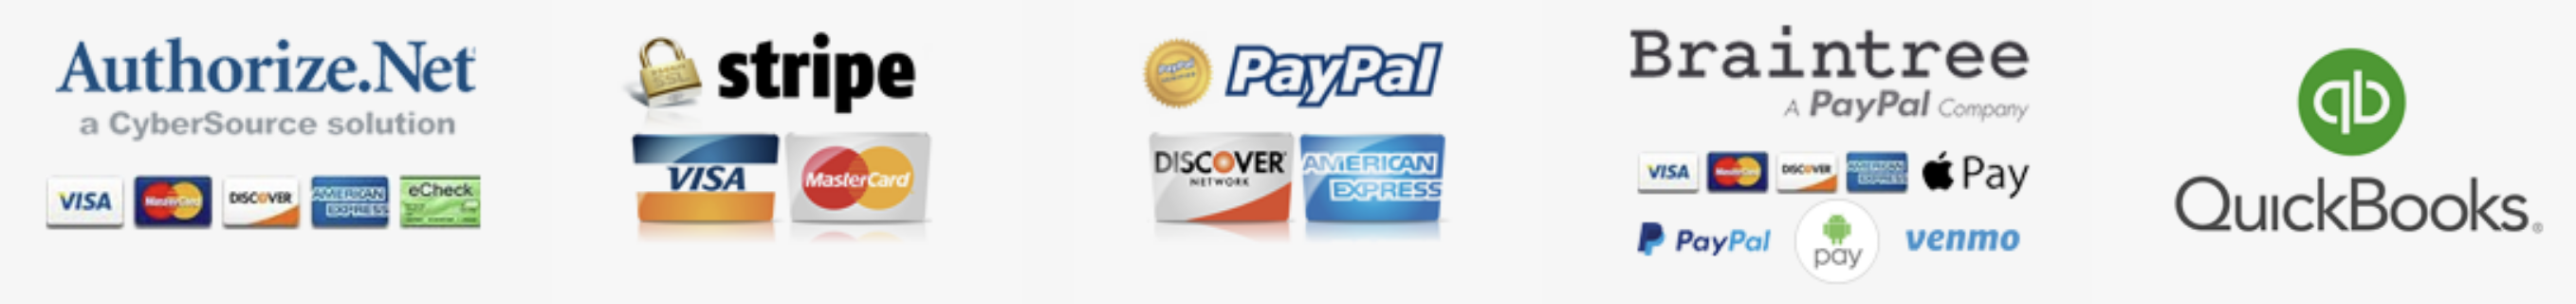 Payment Platforms